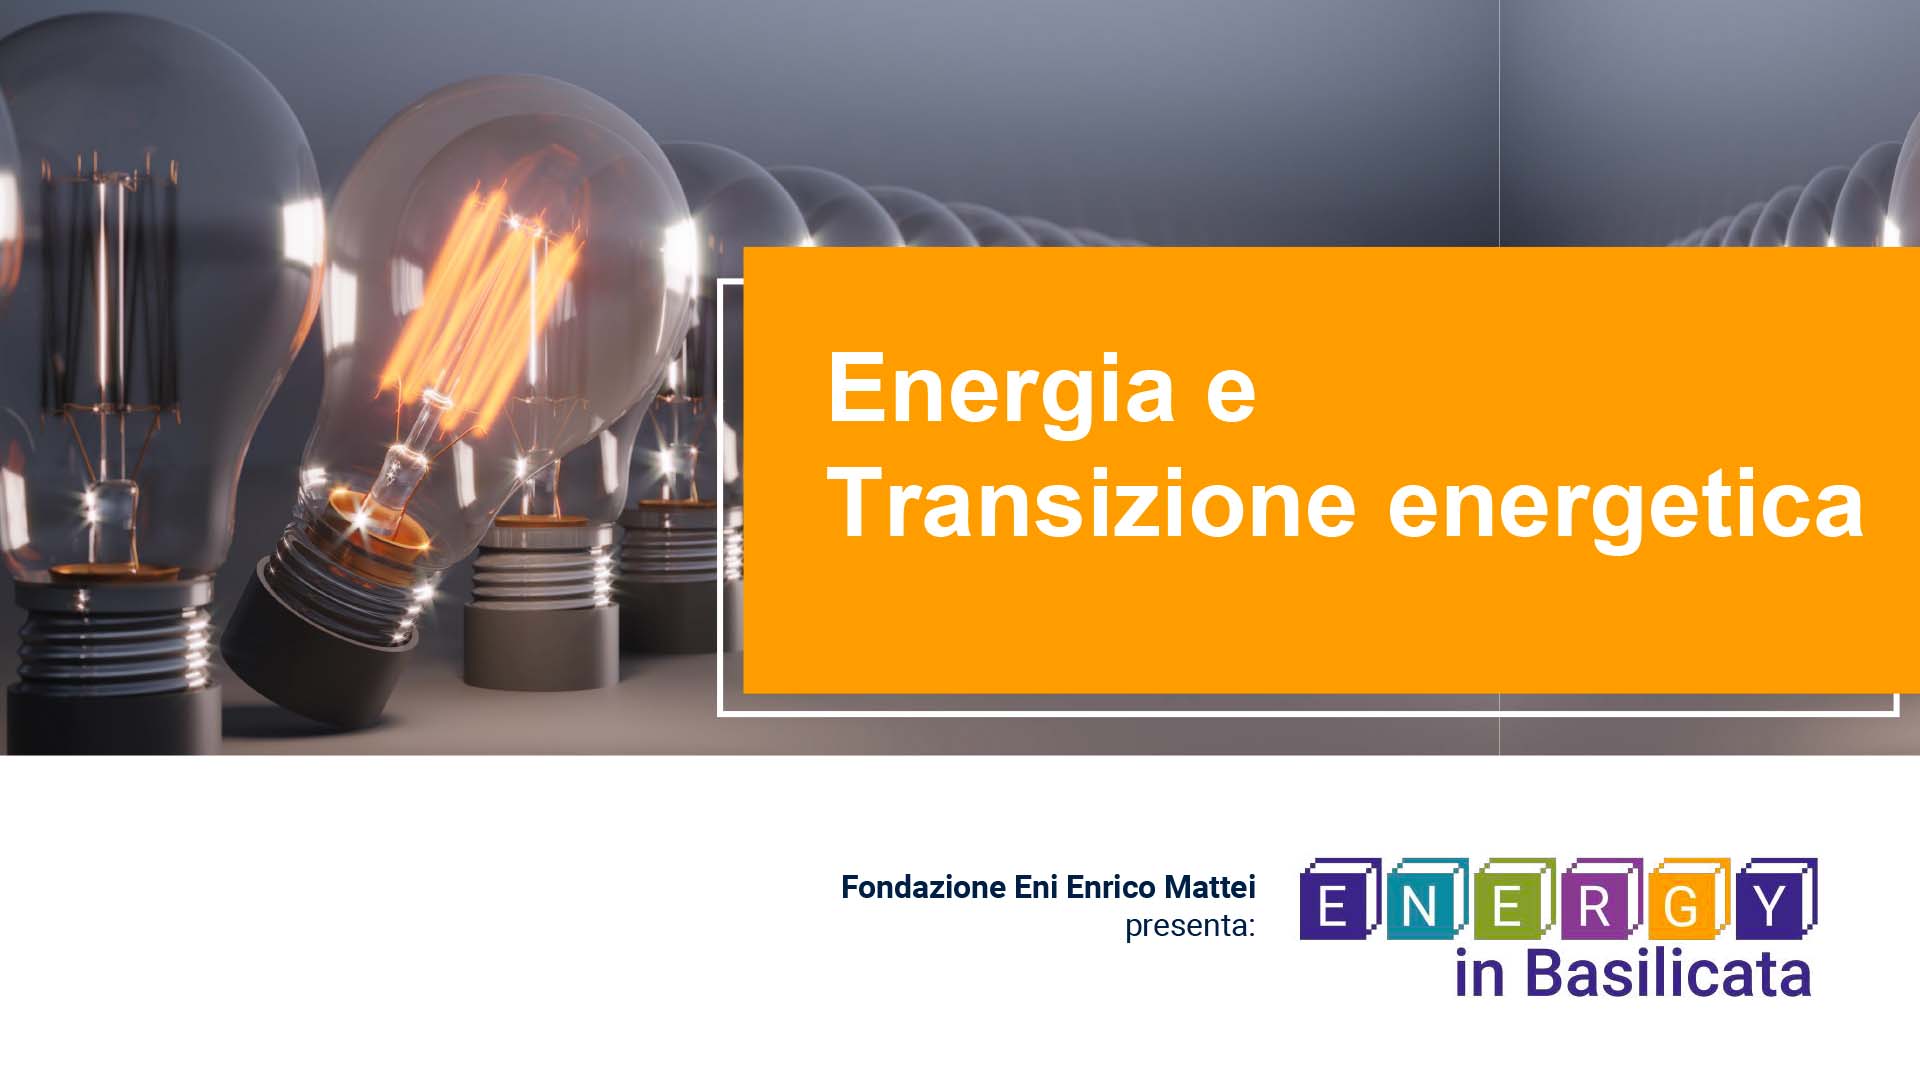 Energia e Transizione energetica